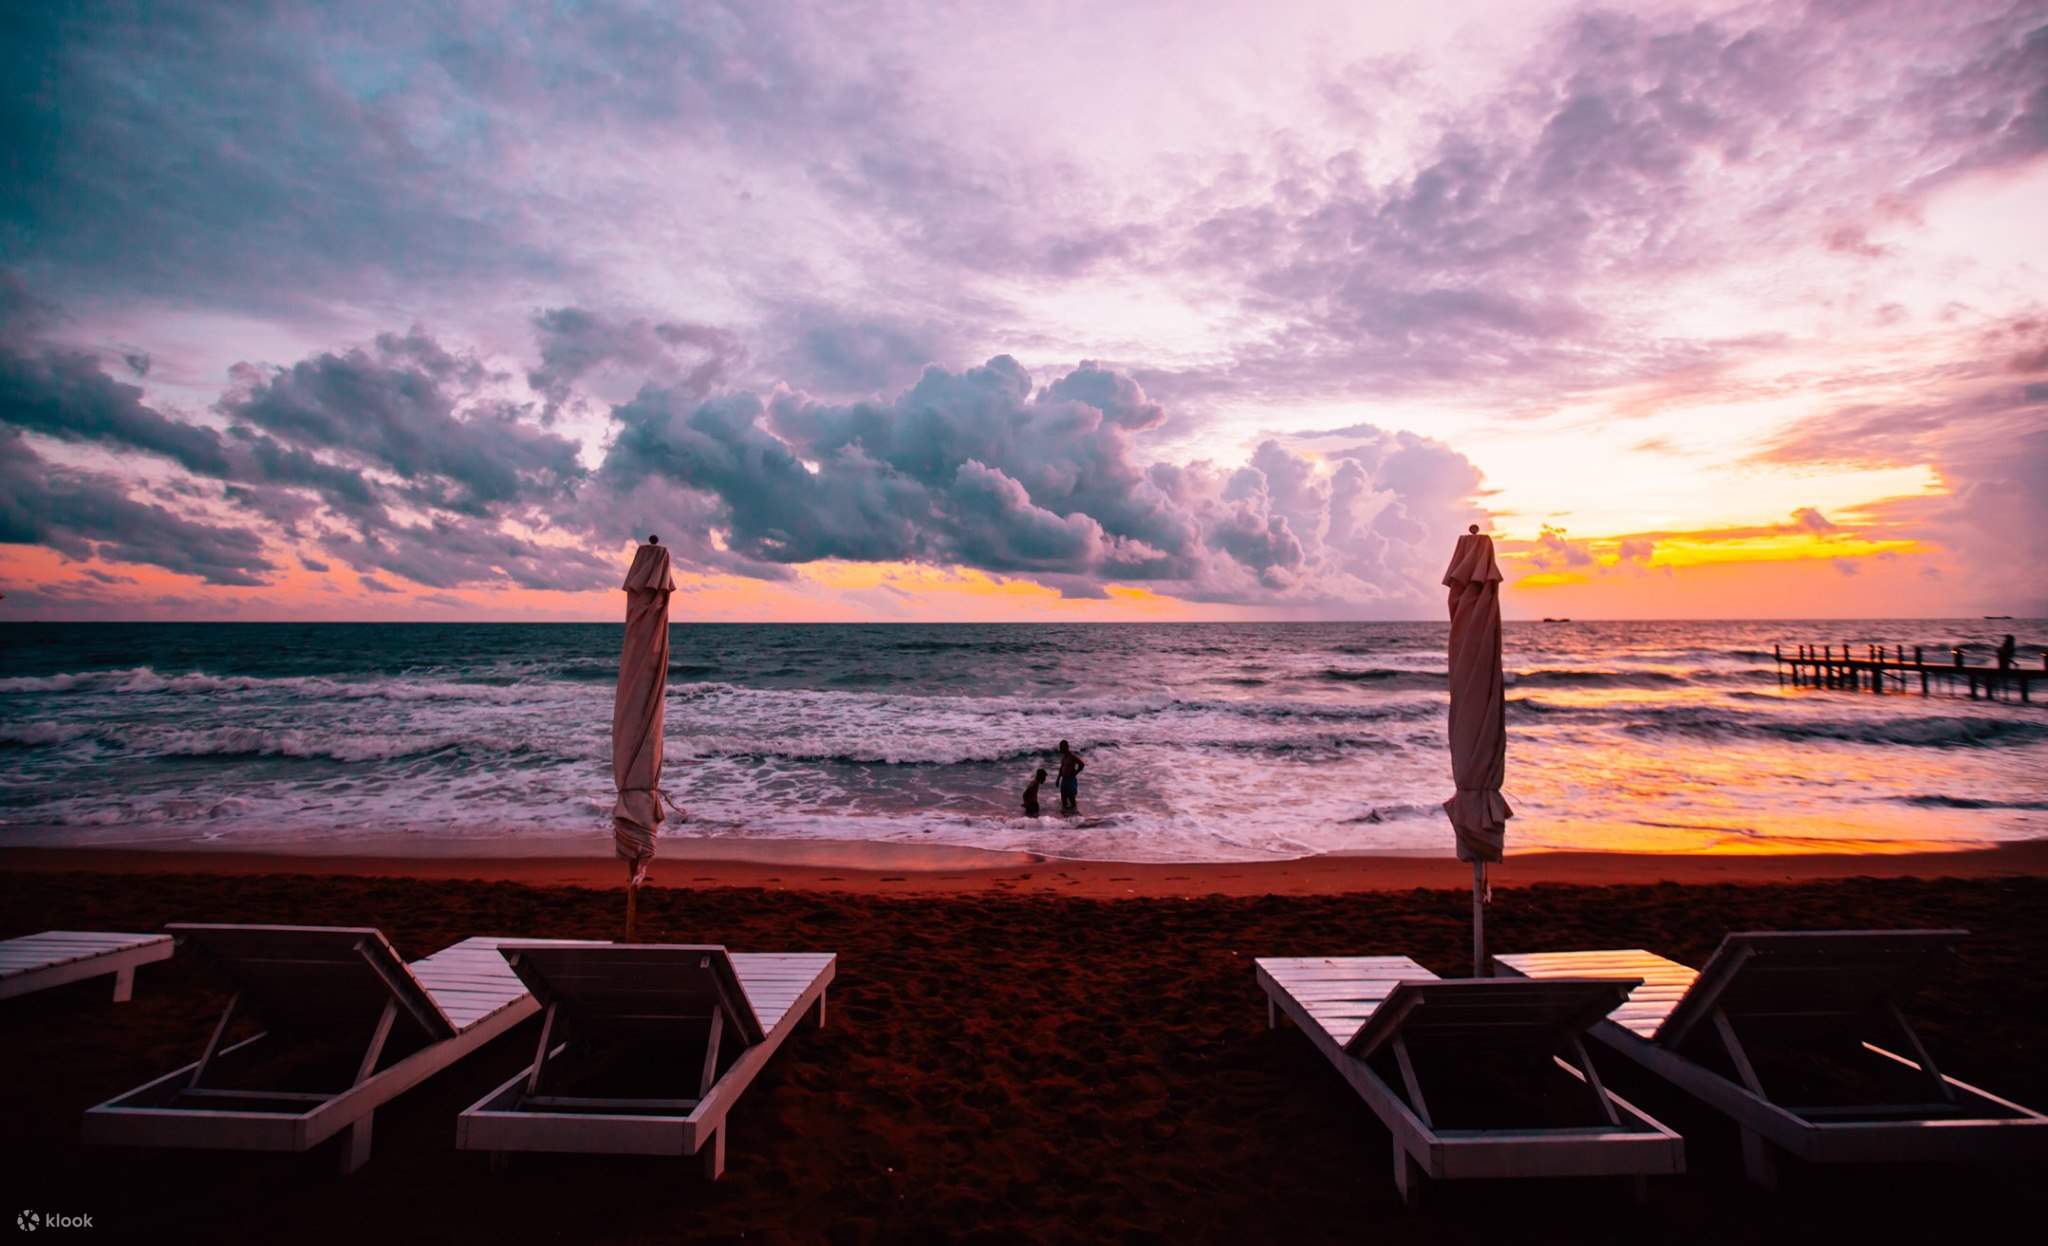 Vé Sunset Sanato Beach Club: Hãy đến với Sanato Beach Club và trải nghiệm cảm giác thăng hoa khi những tia nắng vàng cuối cùng buông xuống. Cùng cảm nhận cuộc sống đầy màu sắc và đam mê tại đây bằng cách đặt vé Sunset và tạo dấu ấn khó phai trong cuộc đời bạn.